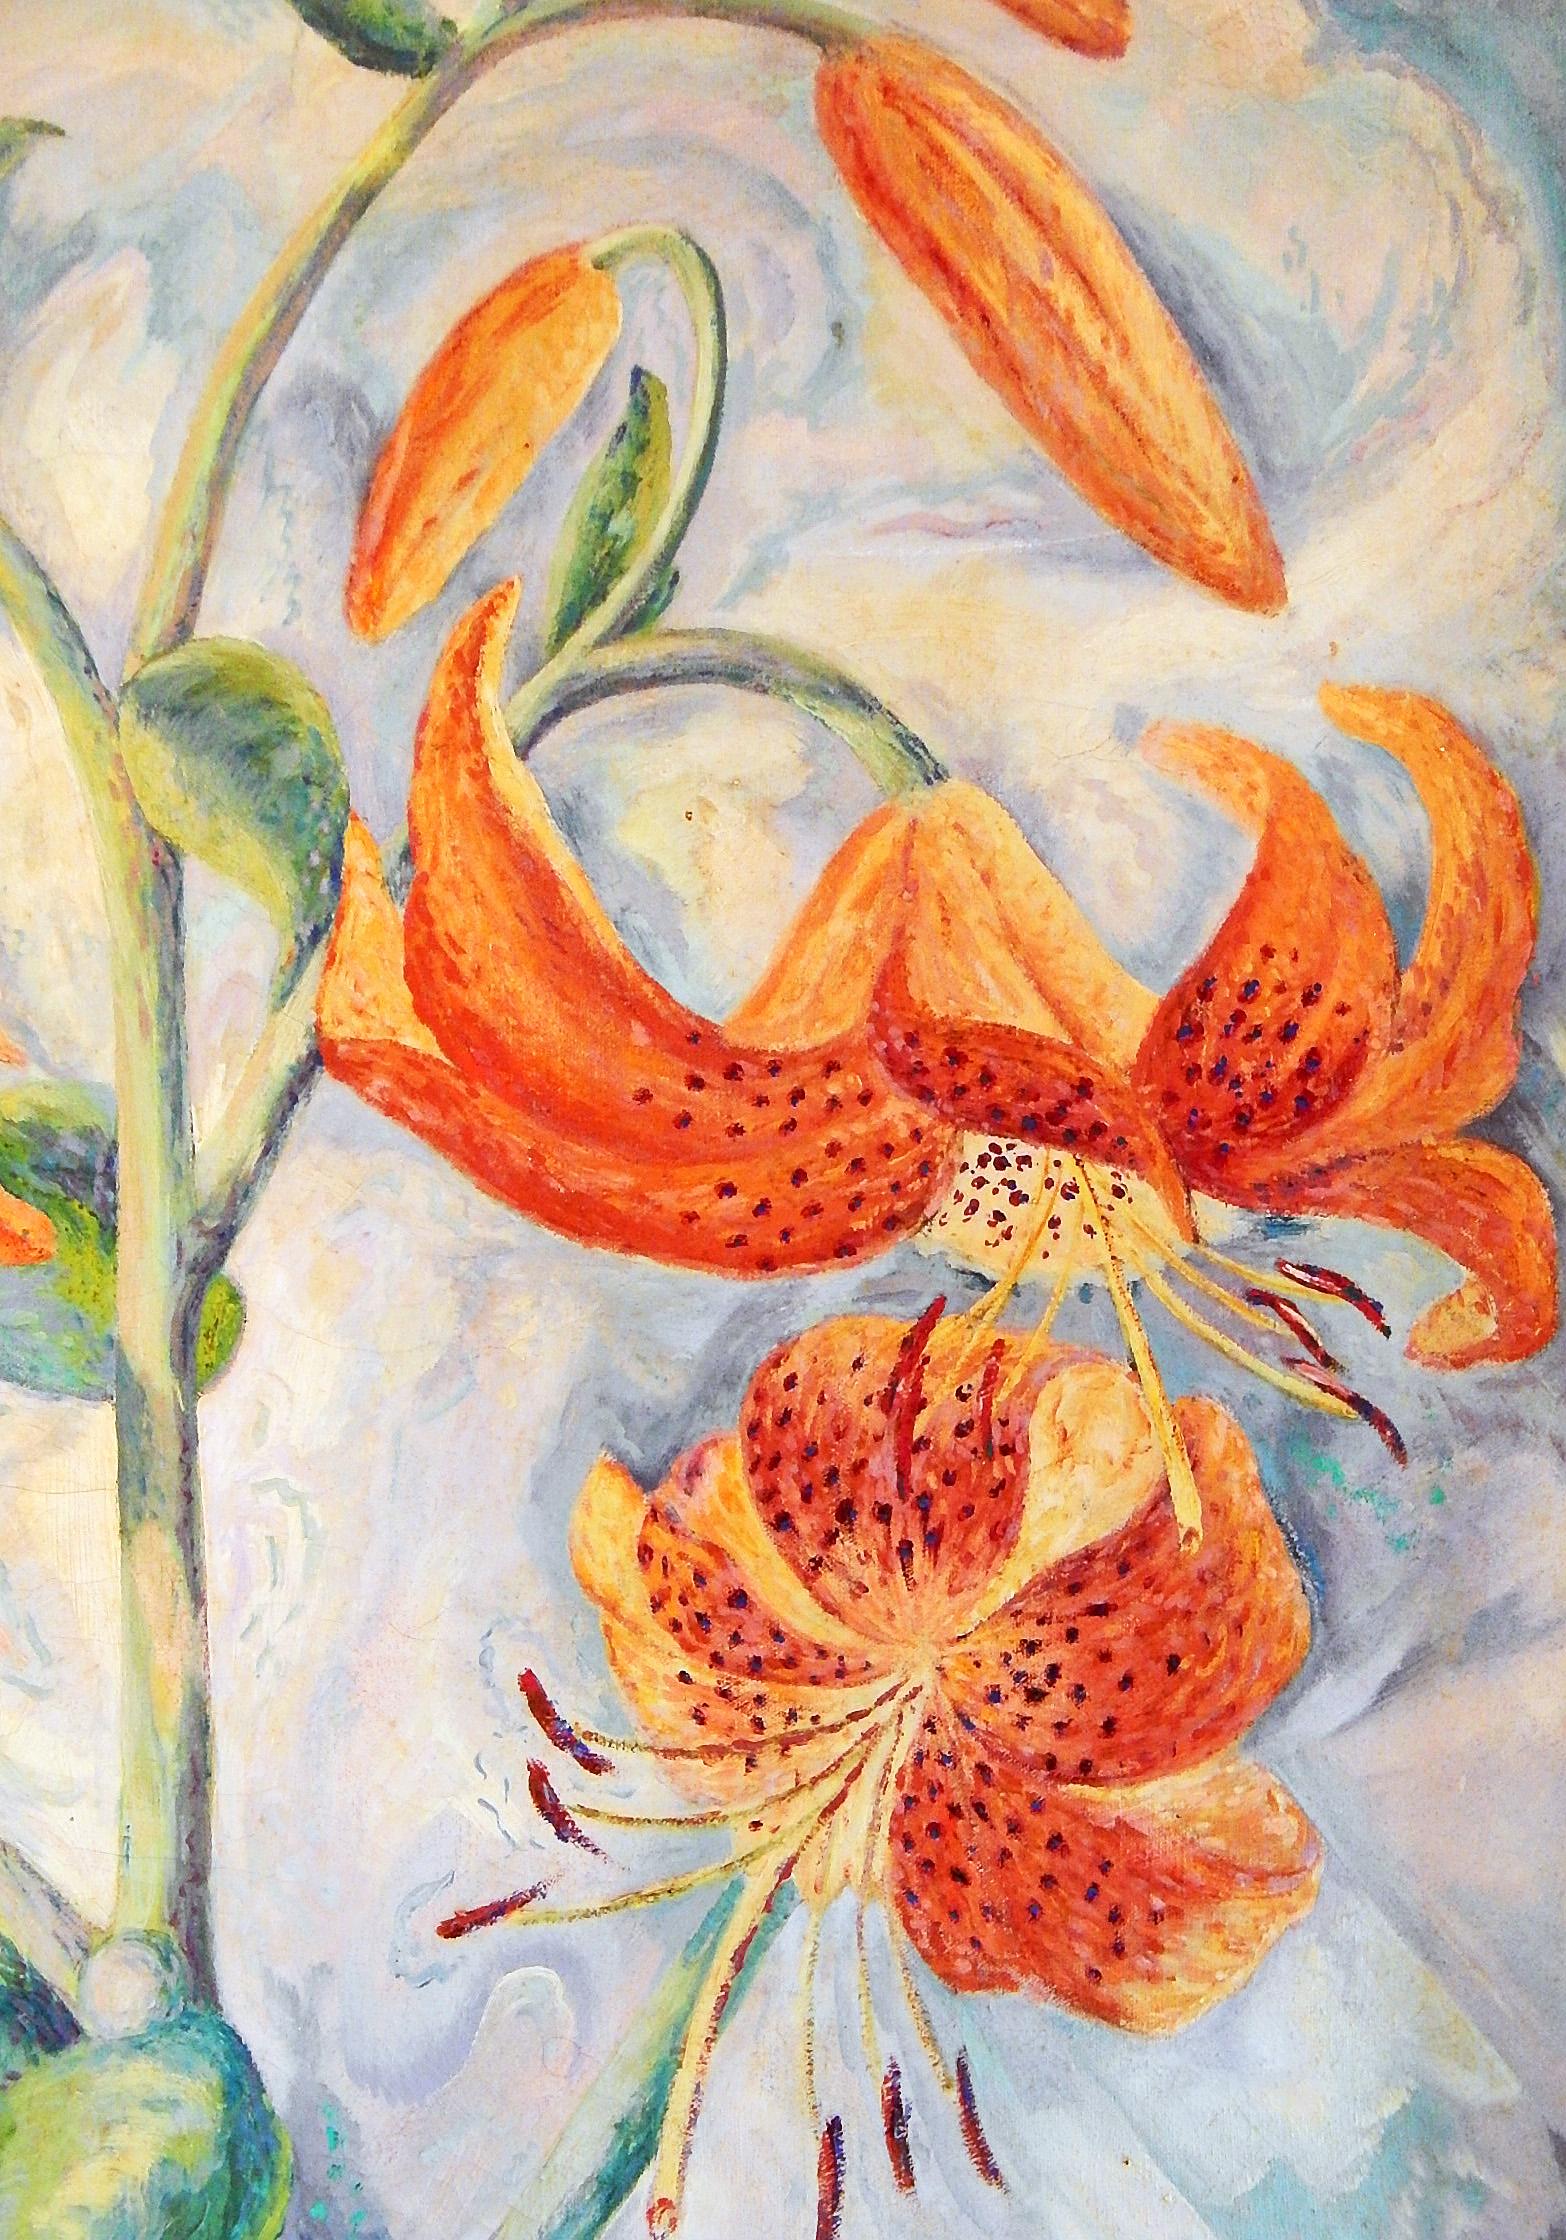 Dieses impressionistische Gemälde aus den 1930er Jahren zeigt Tigerlilien in leuchtenden Farben und ist ein Werk von Simon Maurice Wachtel, einem Maler aus Pennsylvania, dessen Werke selten sind. Er malte einige Leinwände für die Works Progress